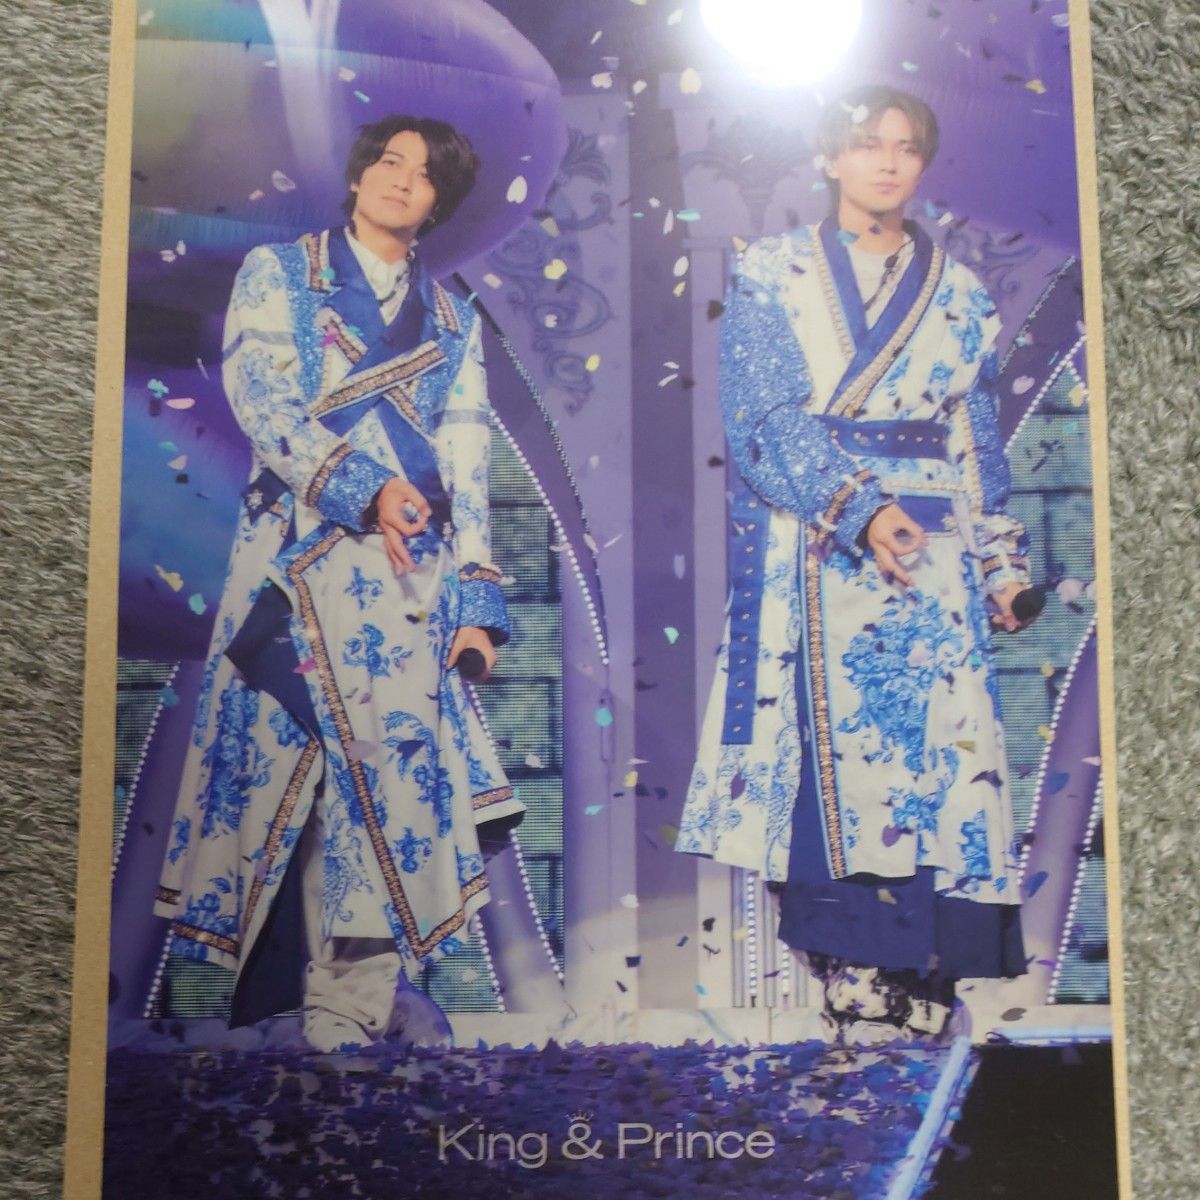 【特典付】King & Prince LIVE TOUR 2023 ピース(初回限定盤) (3枚組) [DVD]